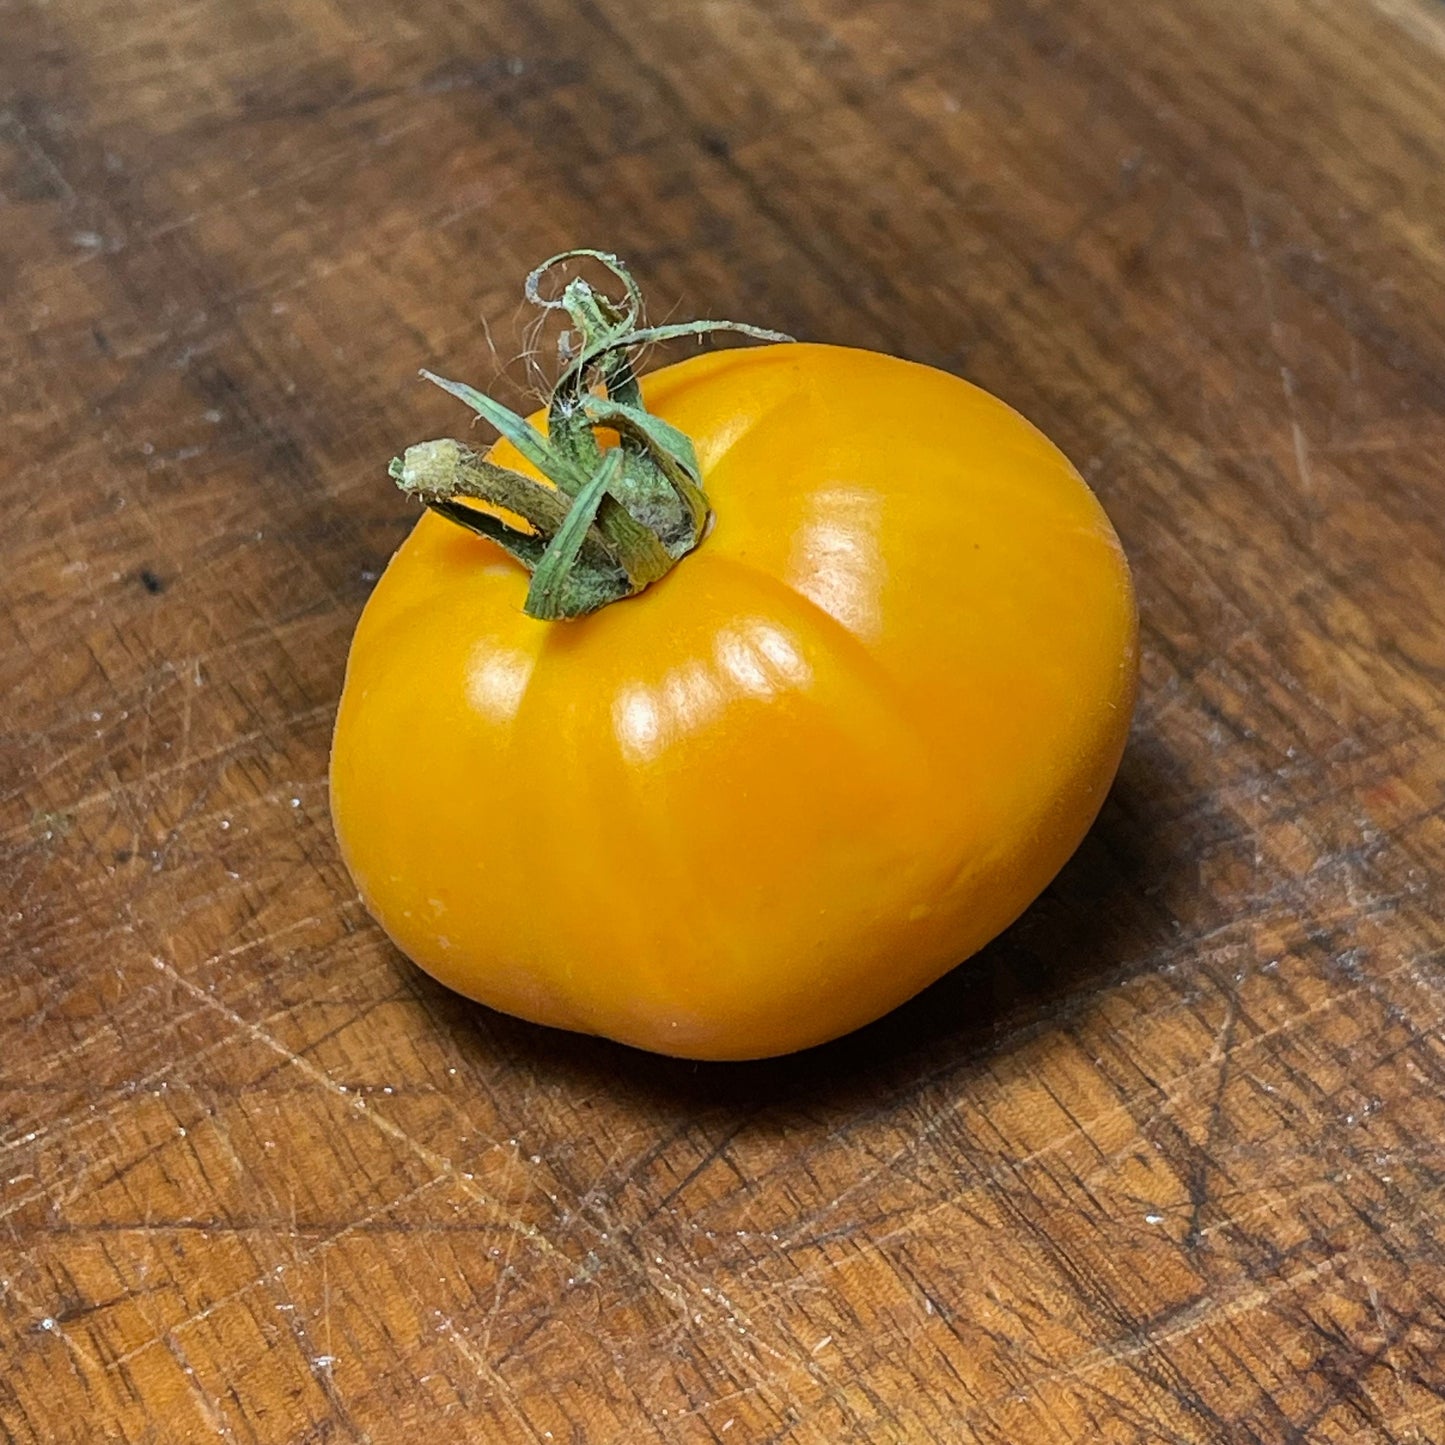 Dixie Golden Giant - Graines de tomates - Tomates anciennes - 25+ graines